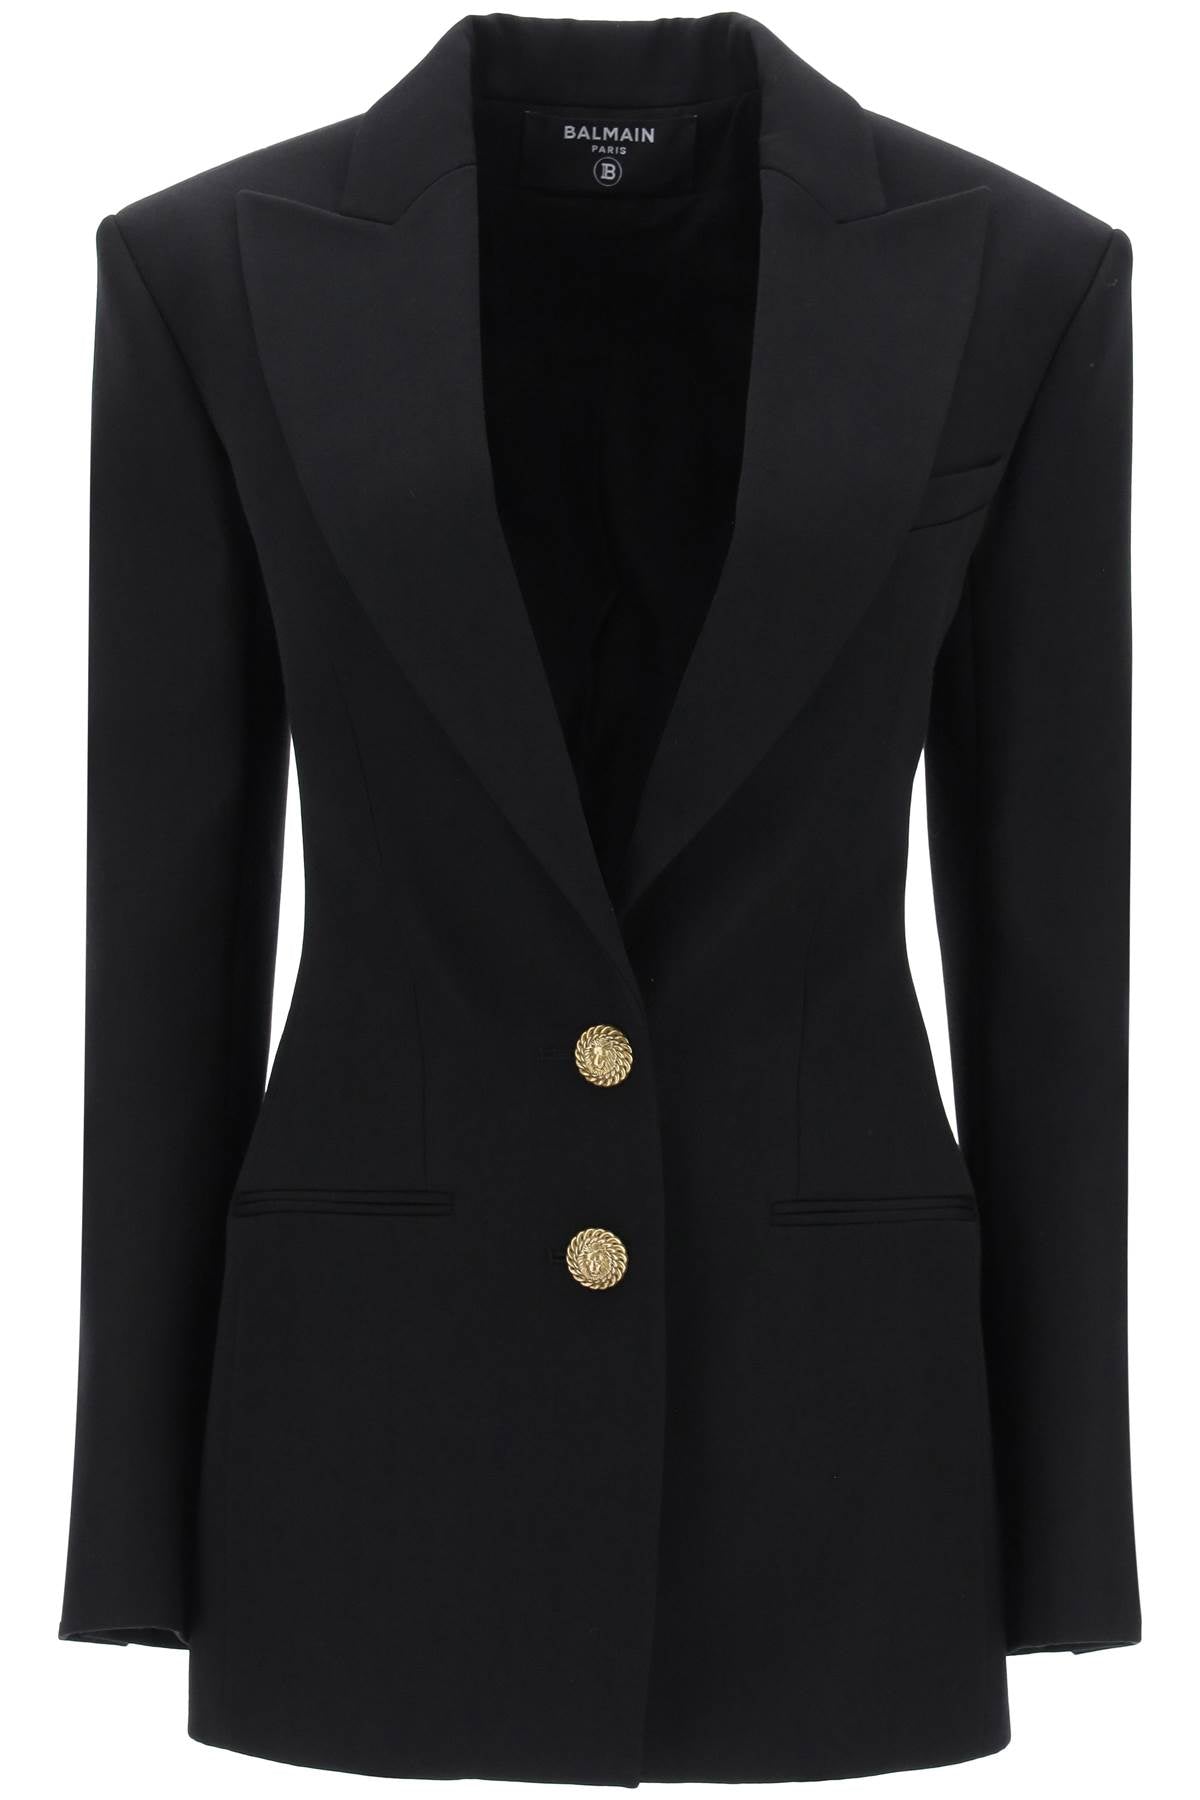 Áo khoác đơn phối màu đen da lông với nút xoàn cho nữ